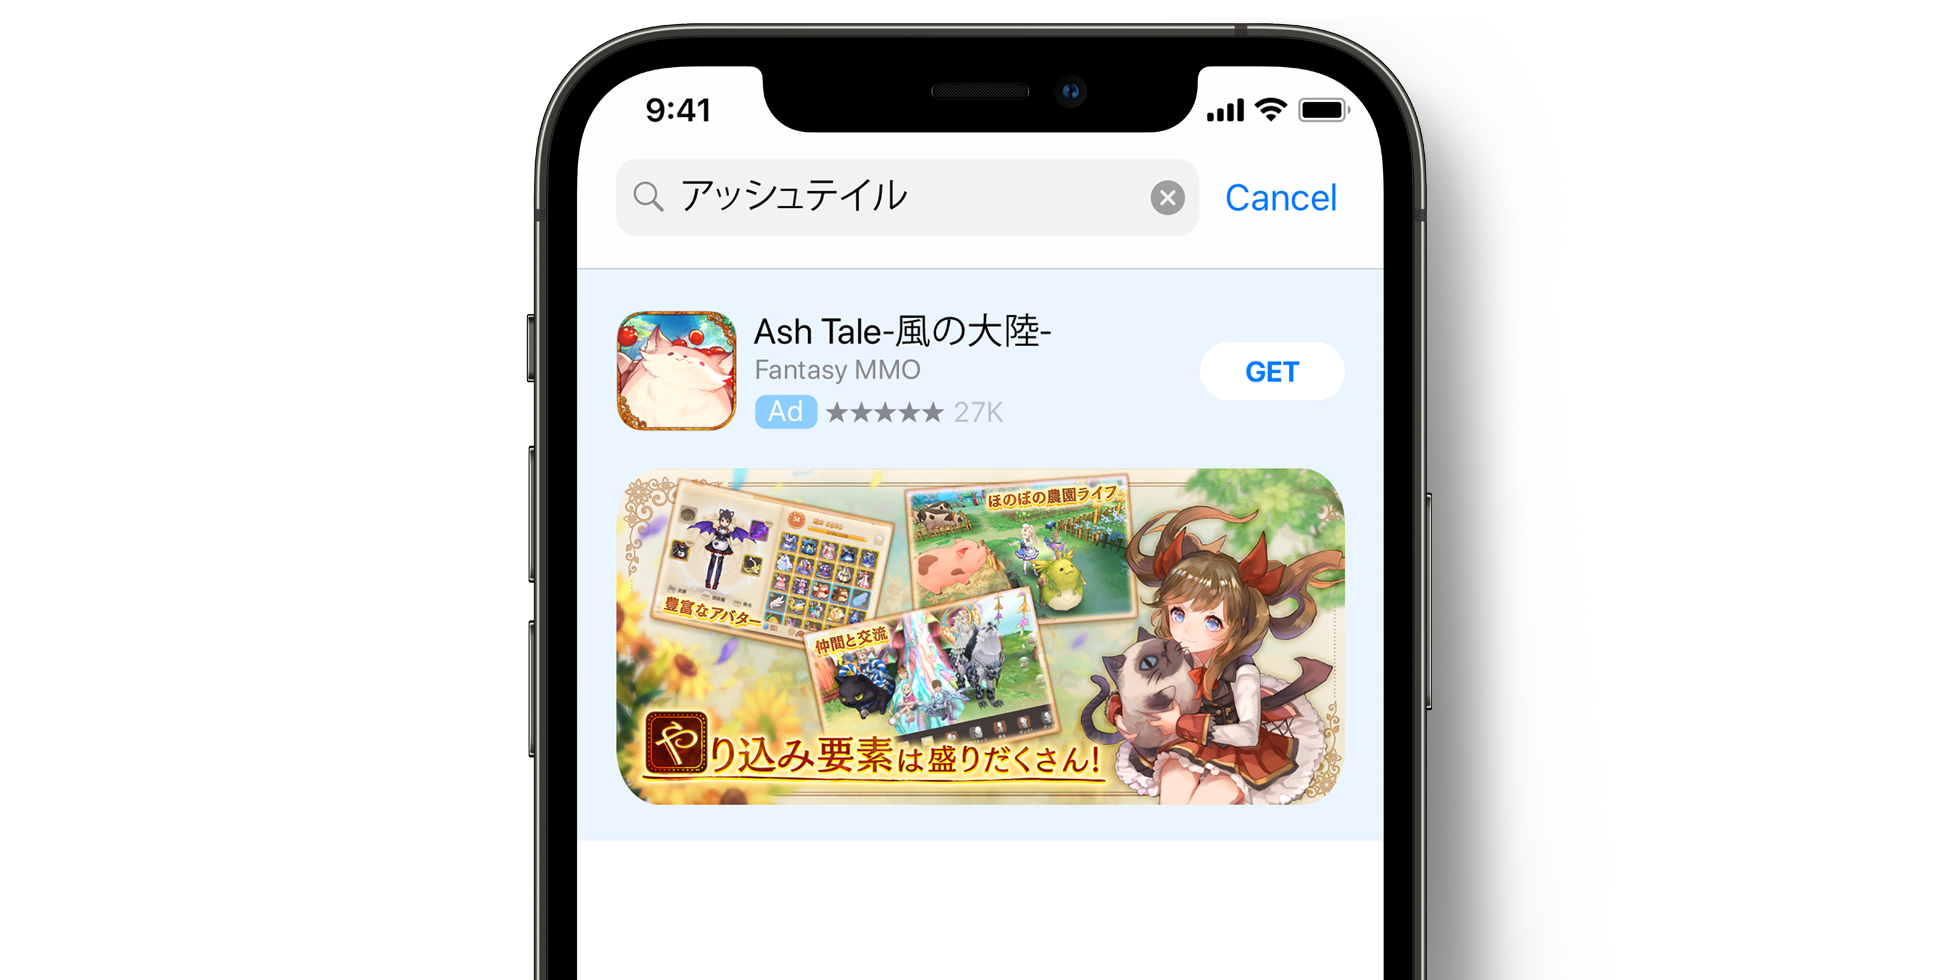 App Store의 Ash Tale 광고